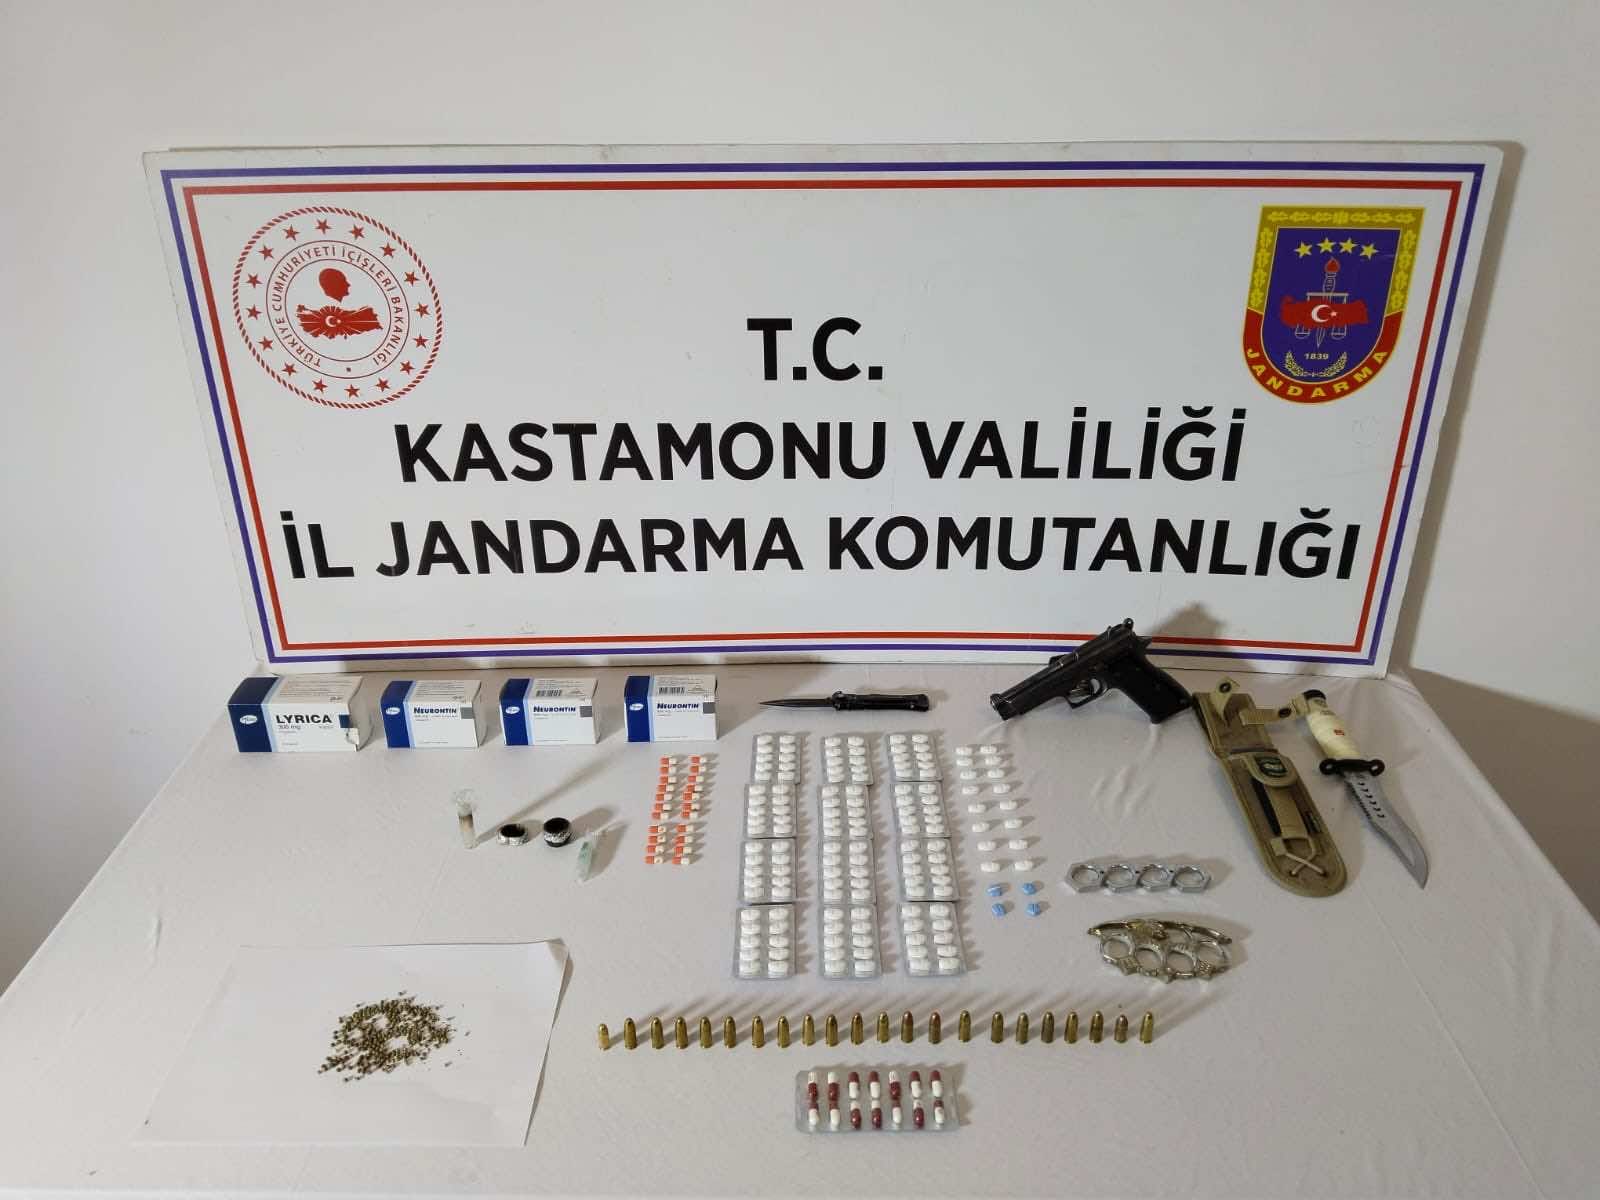 Kastamonu’da düzenlenen uyuşturucu operasyonunda 2 kişi yakalandı